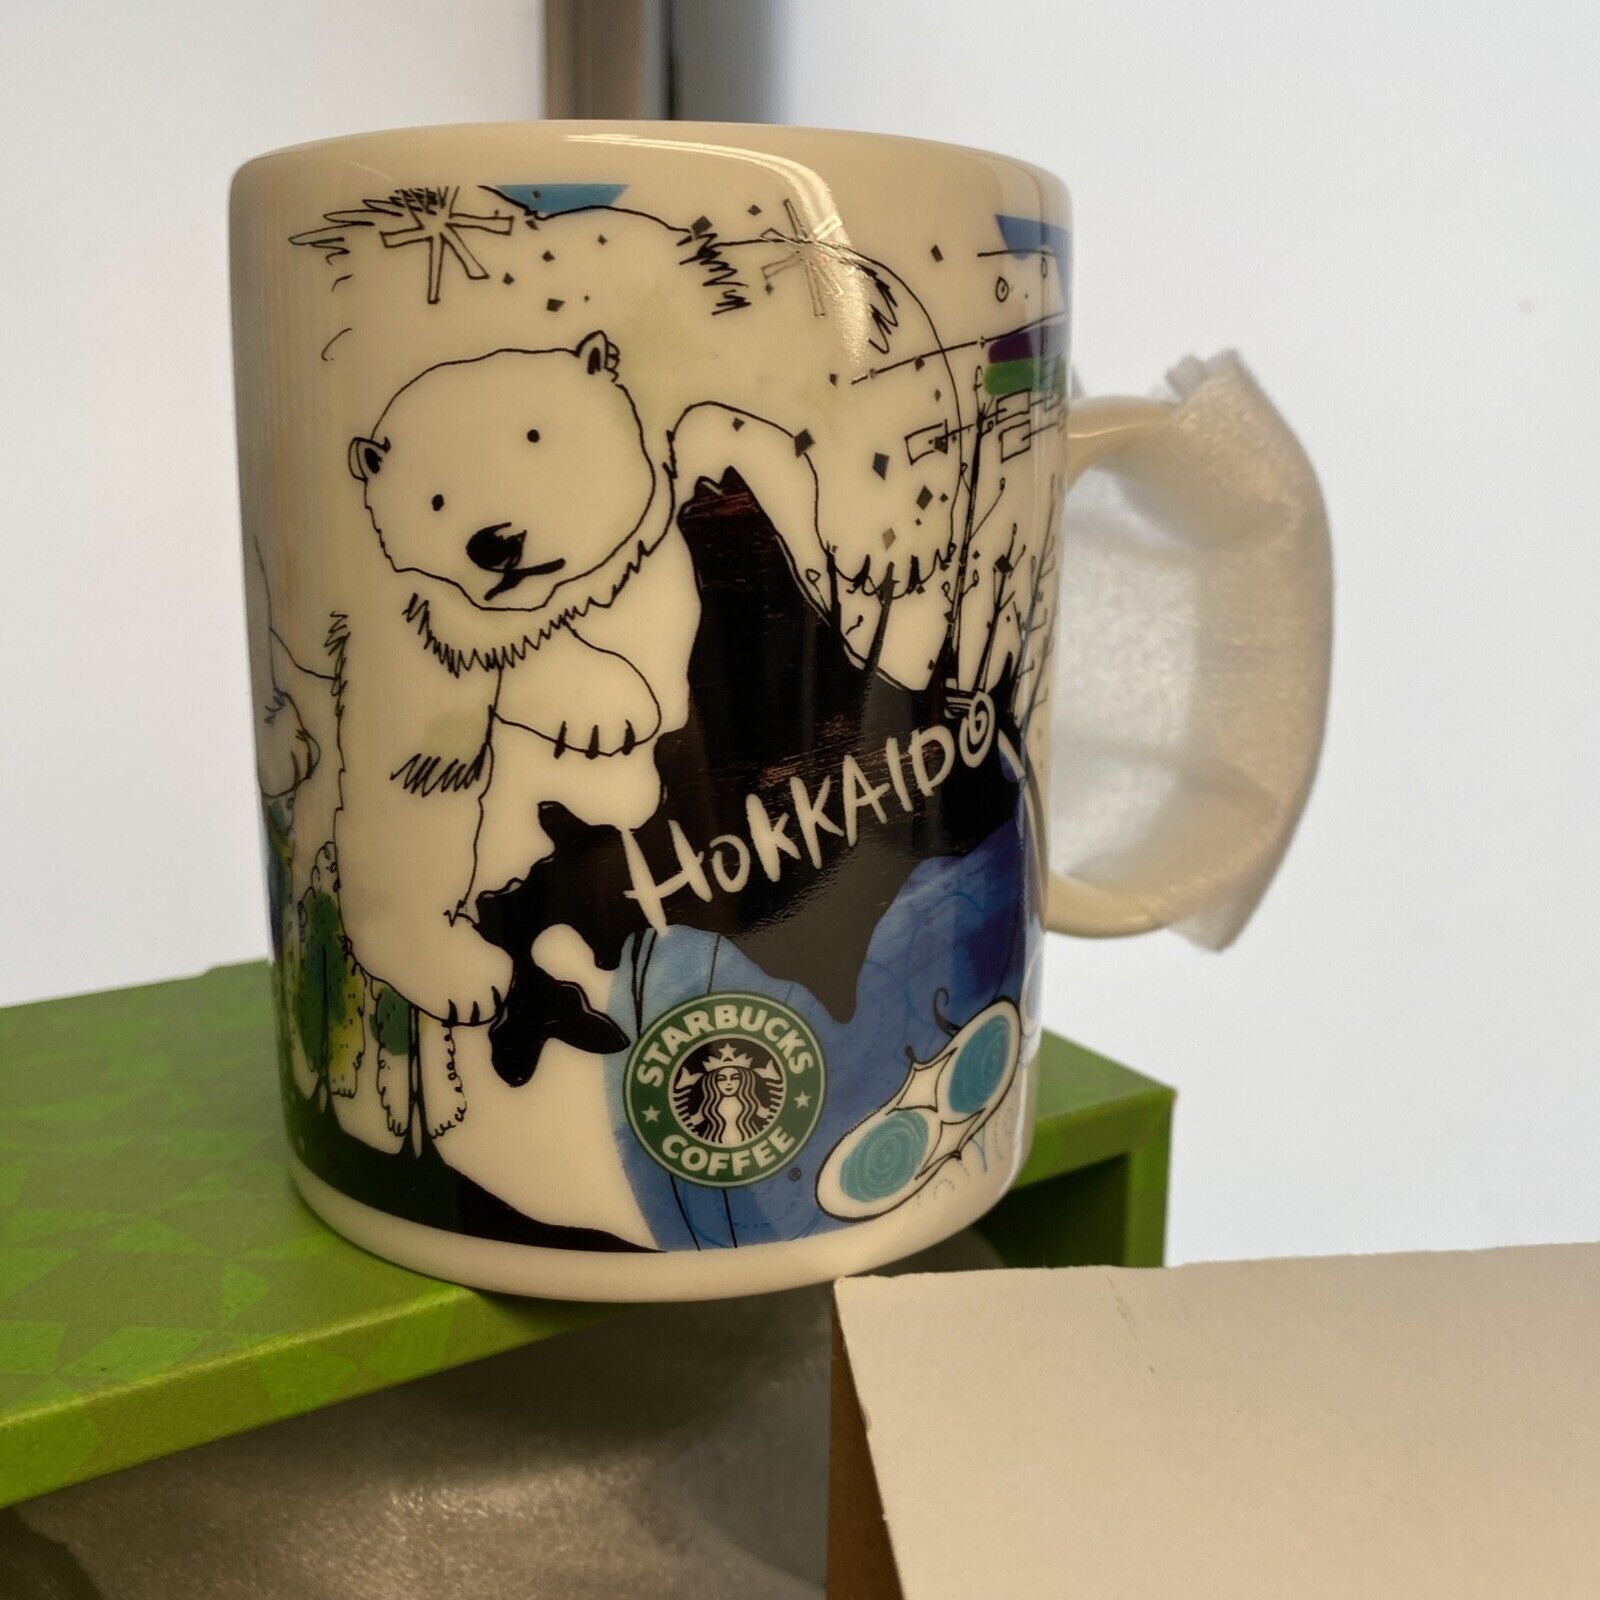 Starbucks Hokkaido Japan Collection Coffee Mug Ceramic Cup Polar Bear Series NIB